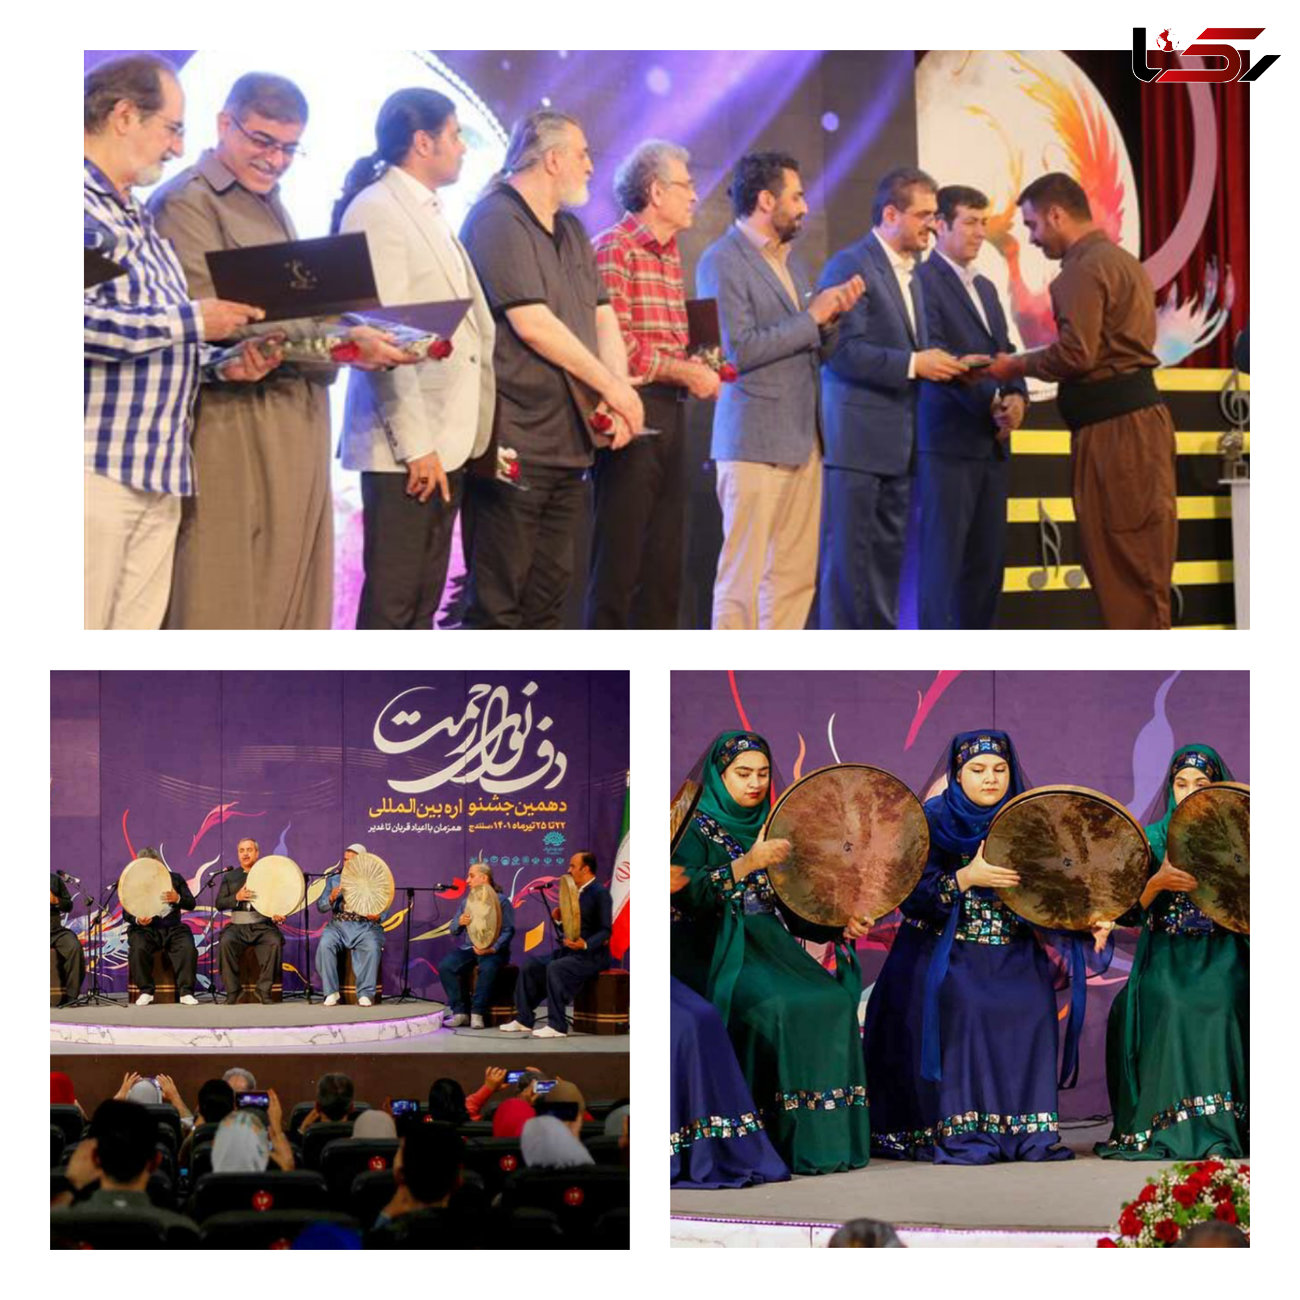 نفرات و گروه های برتر دهمین جشنواره بین المللی دف نوای رحمت با برگزاری مراسمی در پردیس سینمایی بهمن سنندج، معرفی و مورد تقدیر و تجلیل قرار گرفتند.